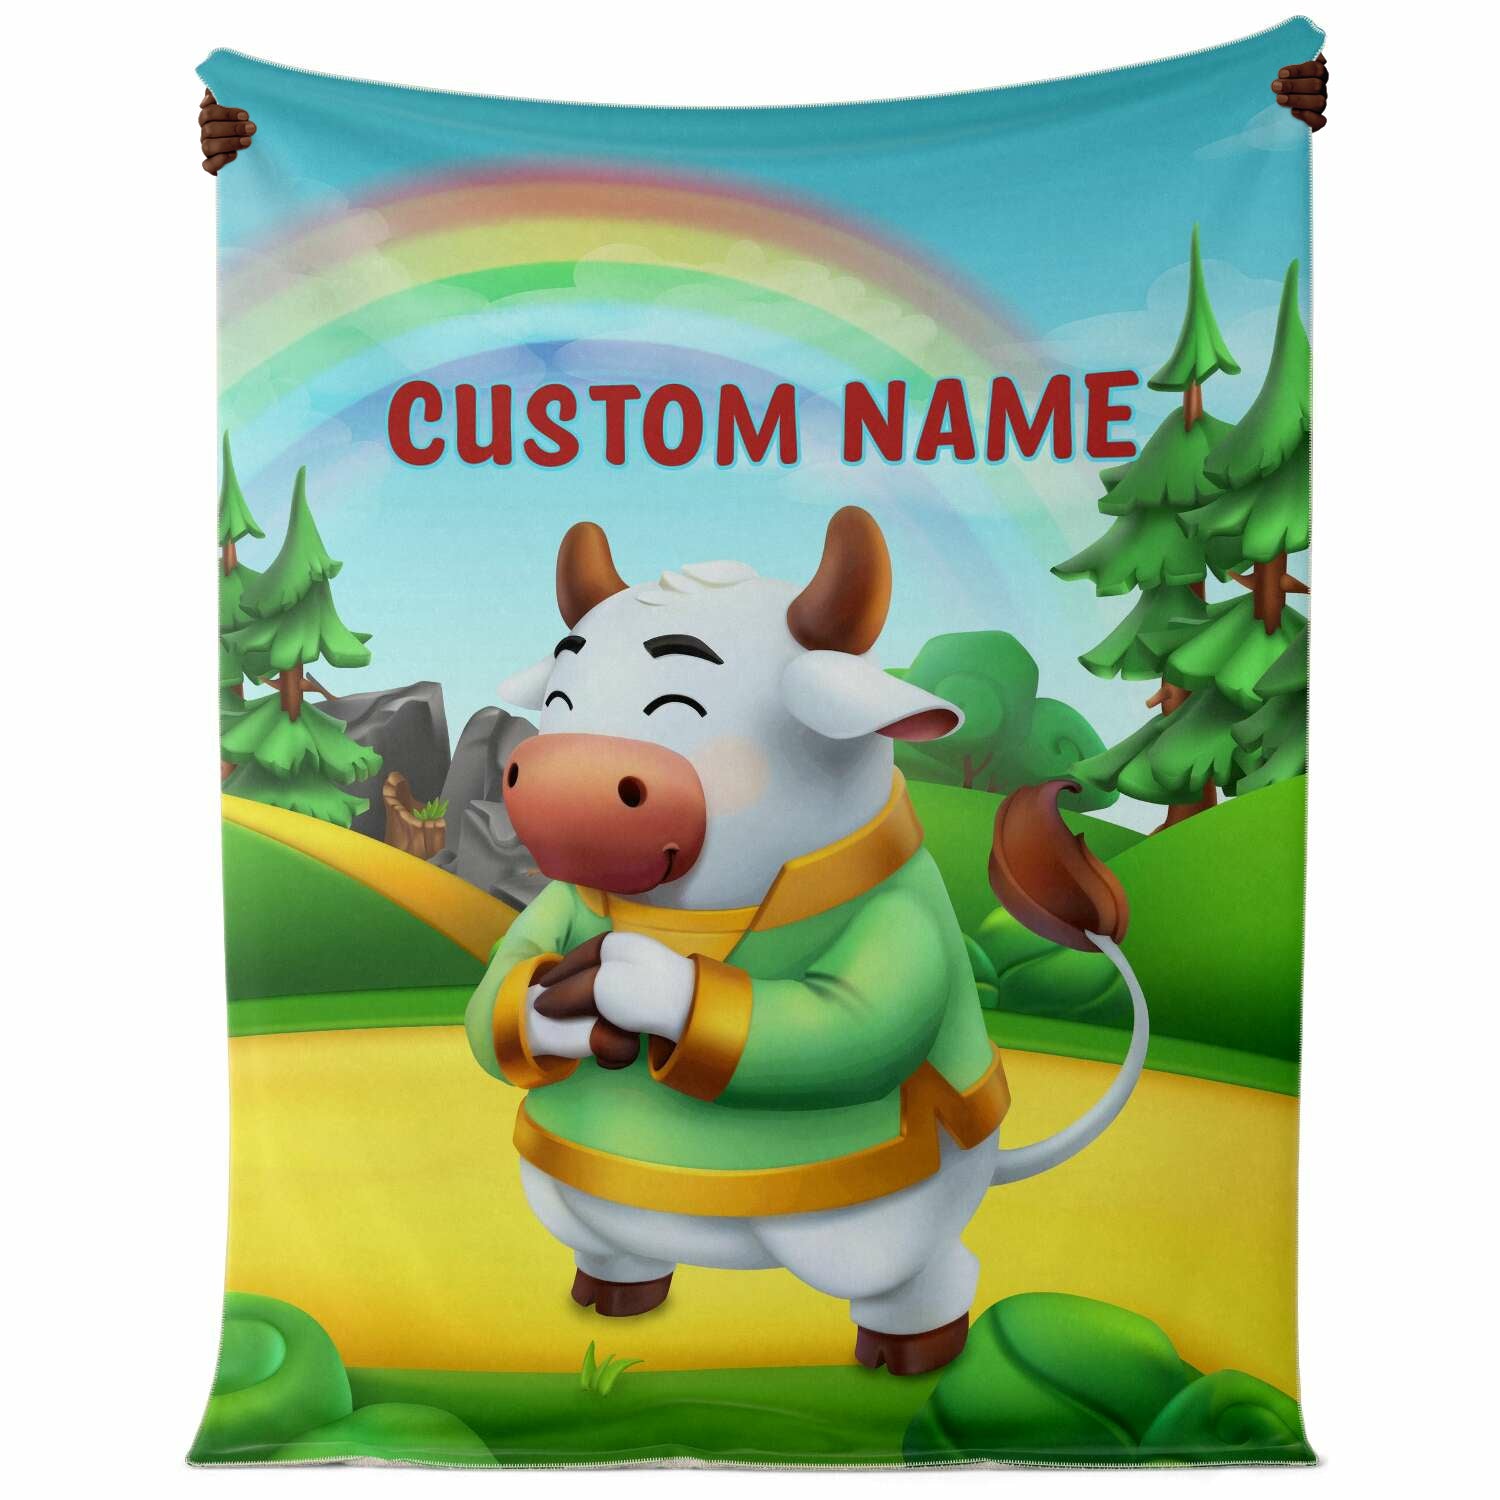 Personalized Name Bull Animal Blanket for Kids, Custom Name Blanket for Boys & Girls